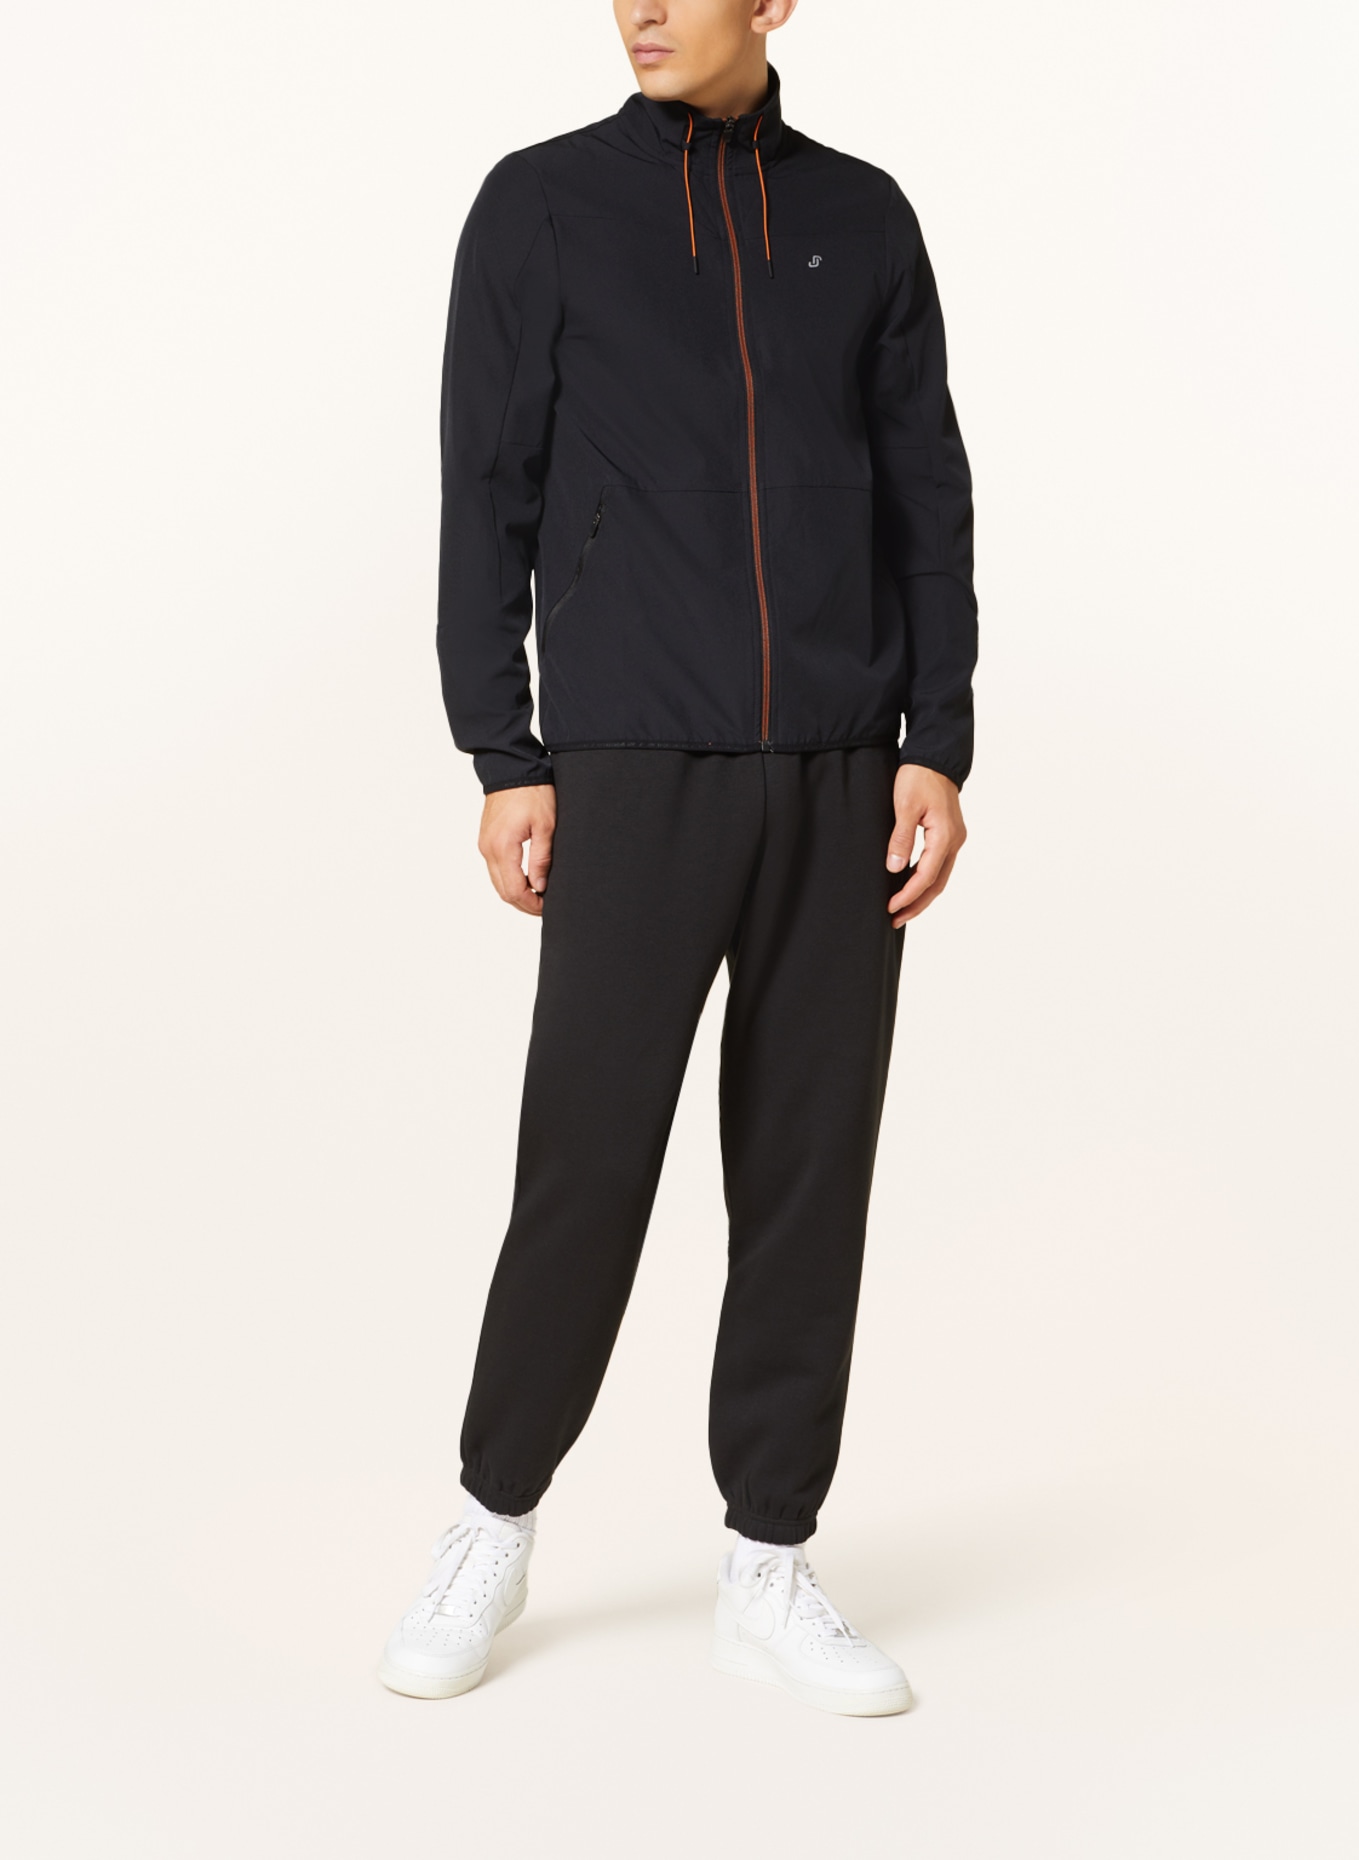 JOY sportswear Training jacket, Color: BLACK (Image 2)